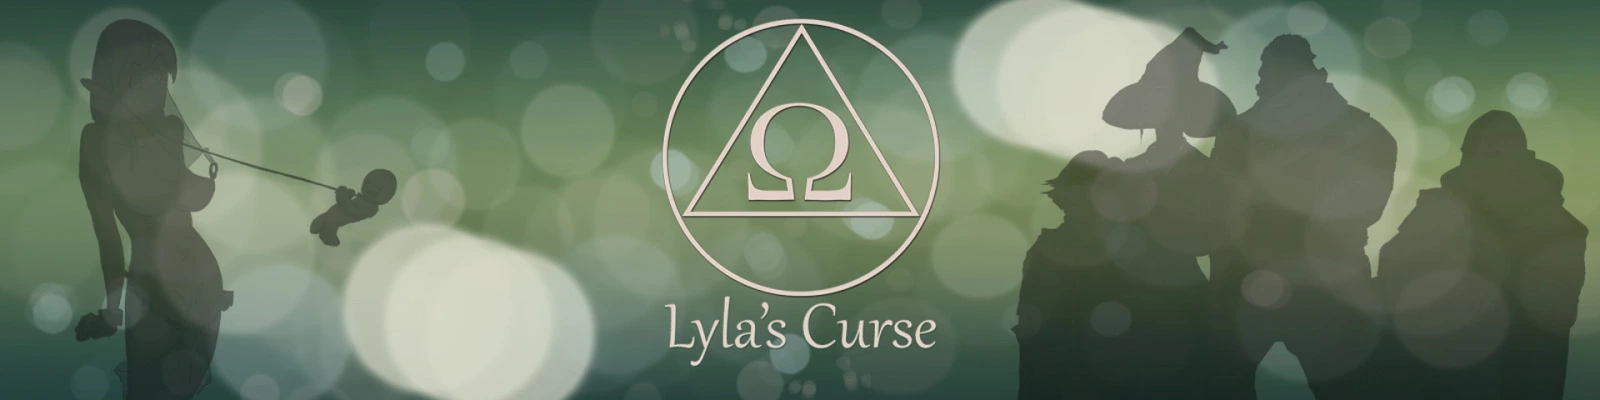 Lyla's Curse [v0.1.43] main image